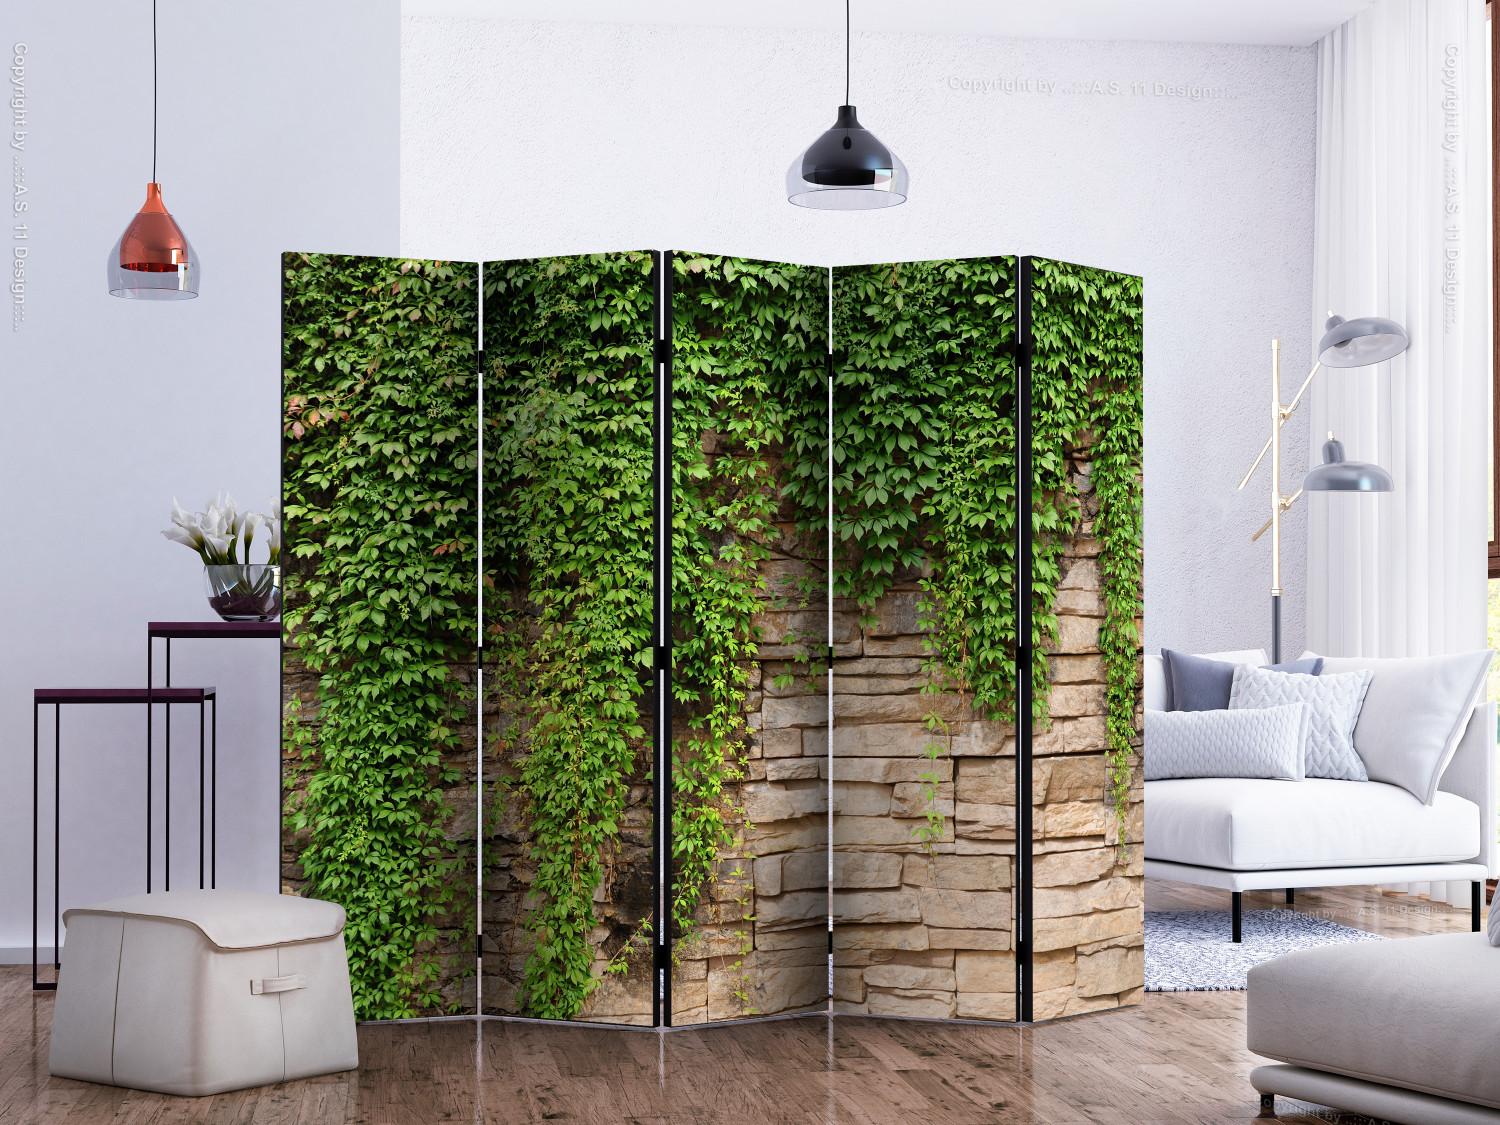 Biombo original Ivy Wall II (5 partes) - ladrillos beige y plantas verdes